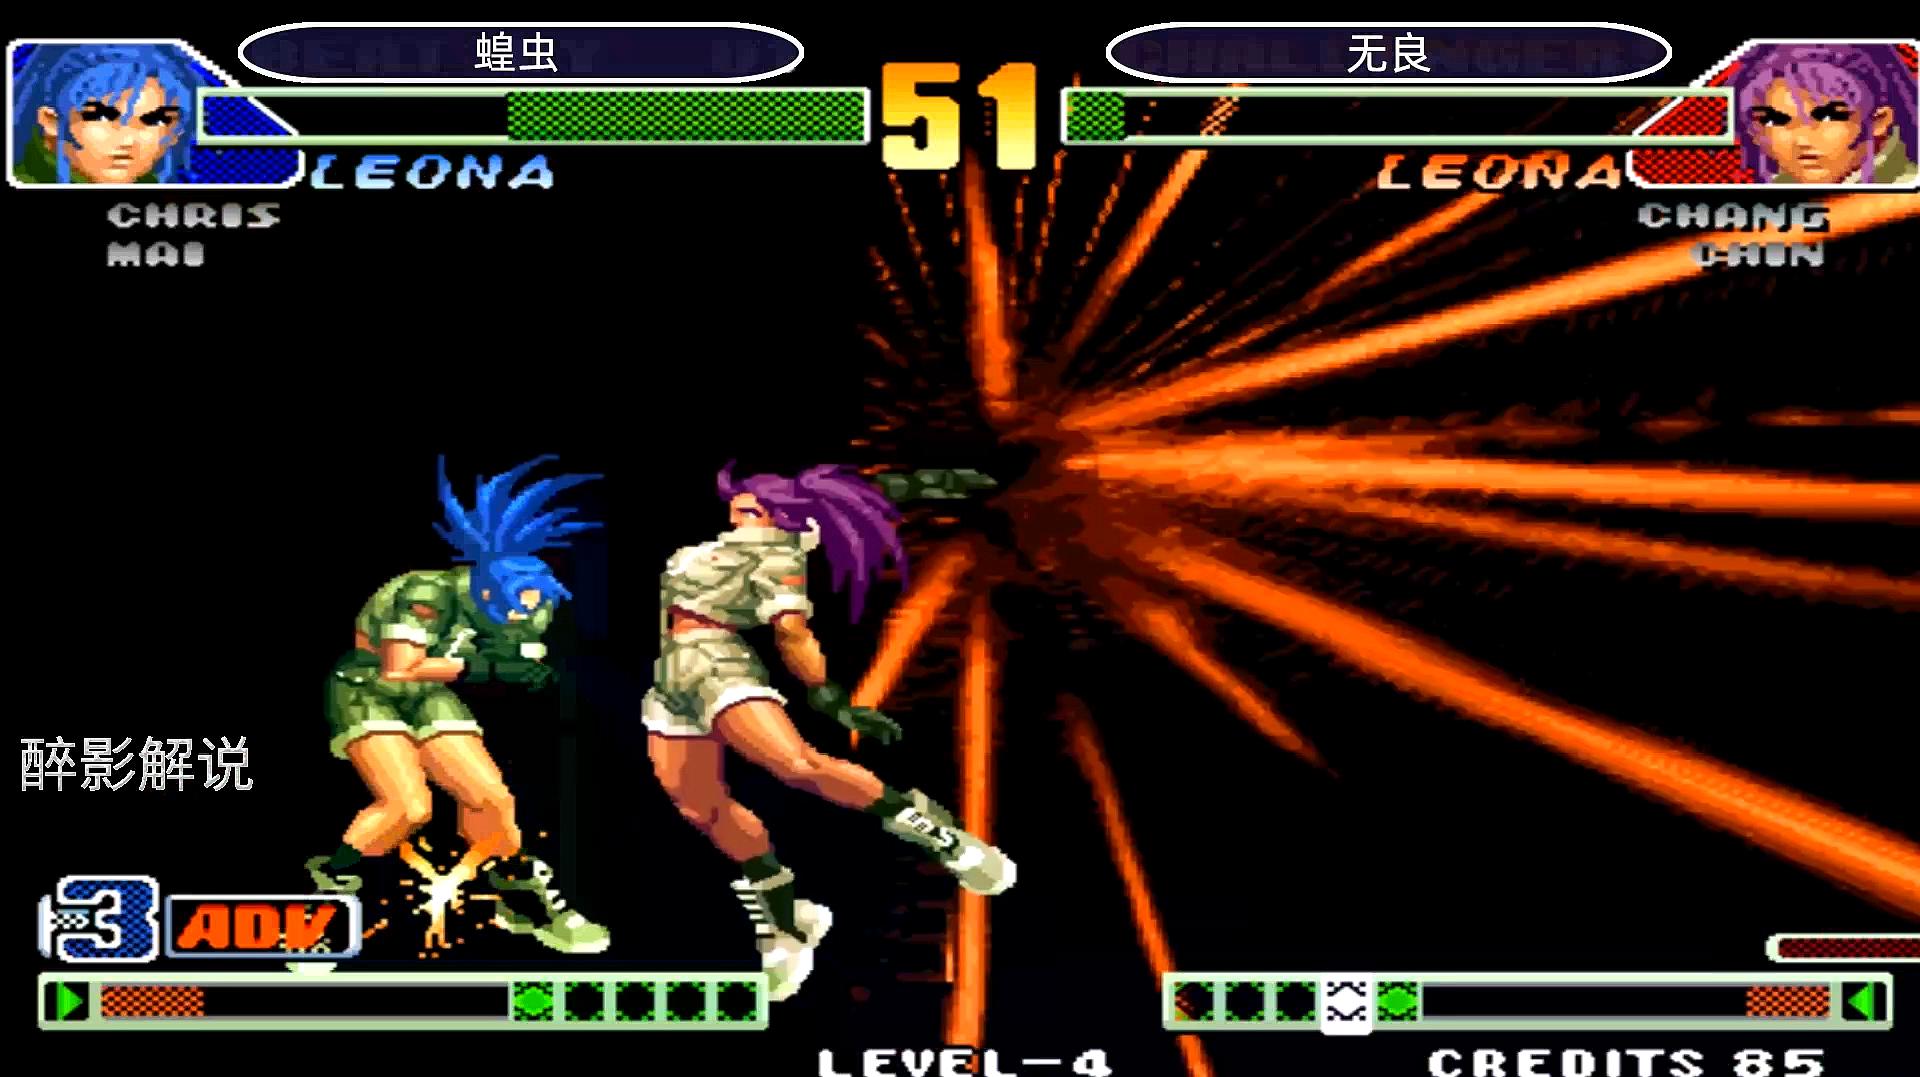 醉影街机游戏解说:《拳皇98》之莉安娜的视频合辑